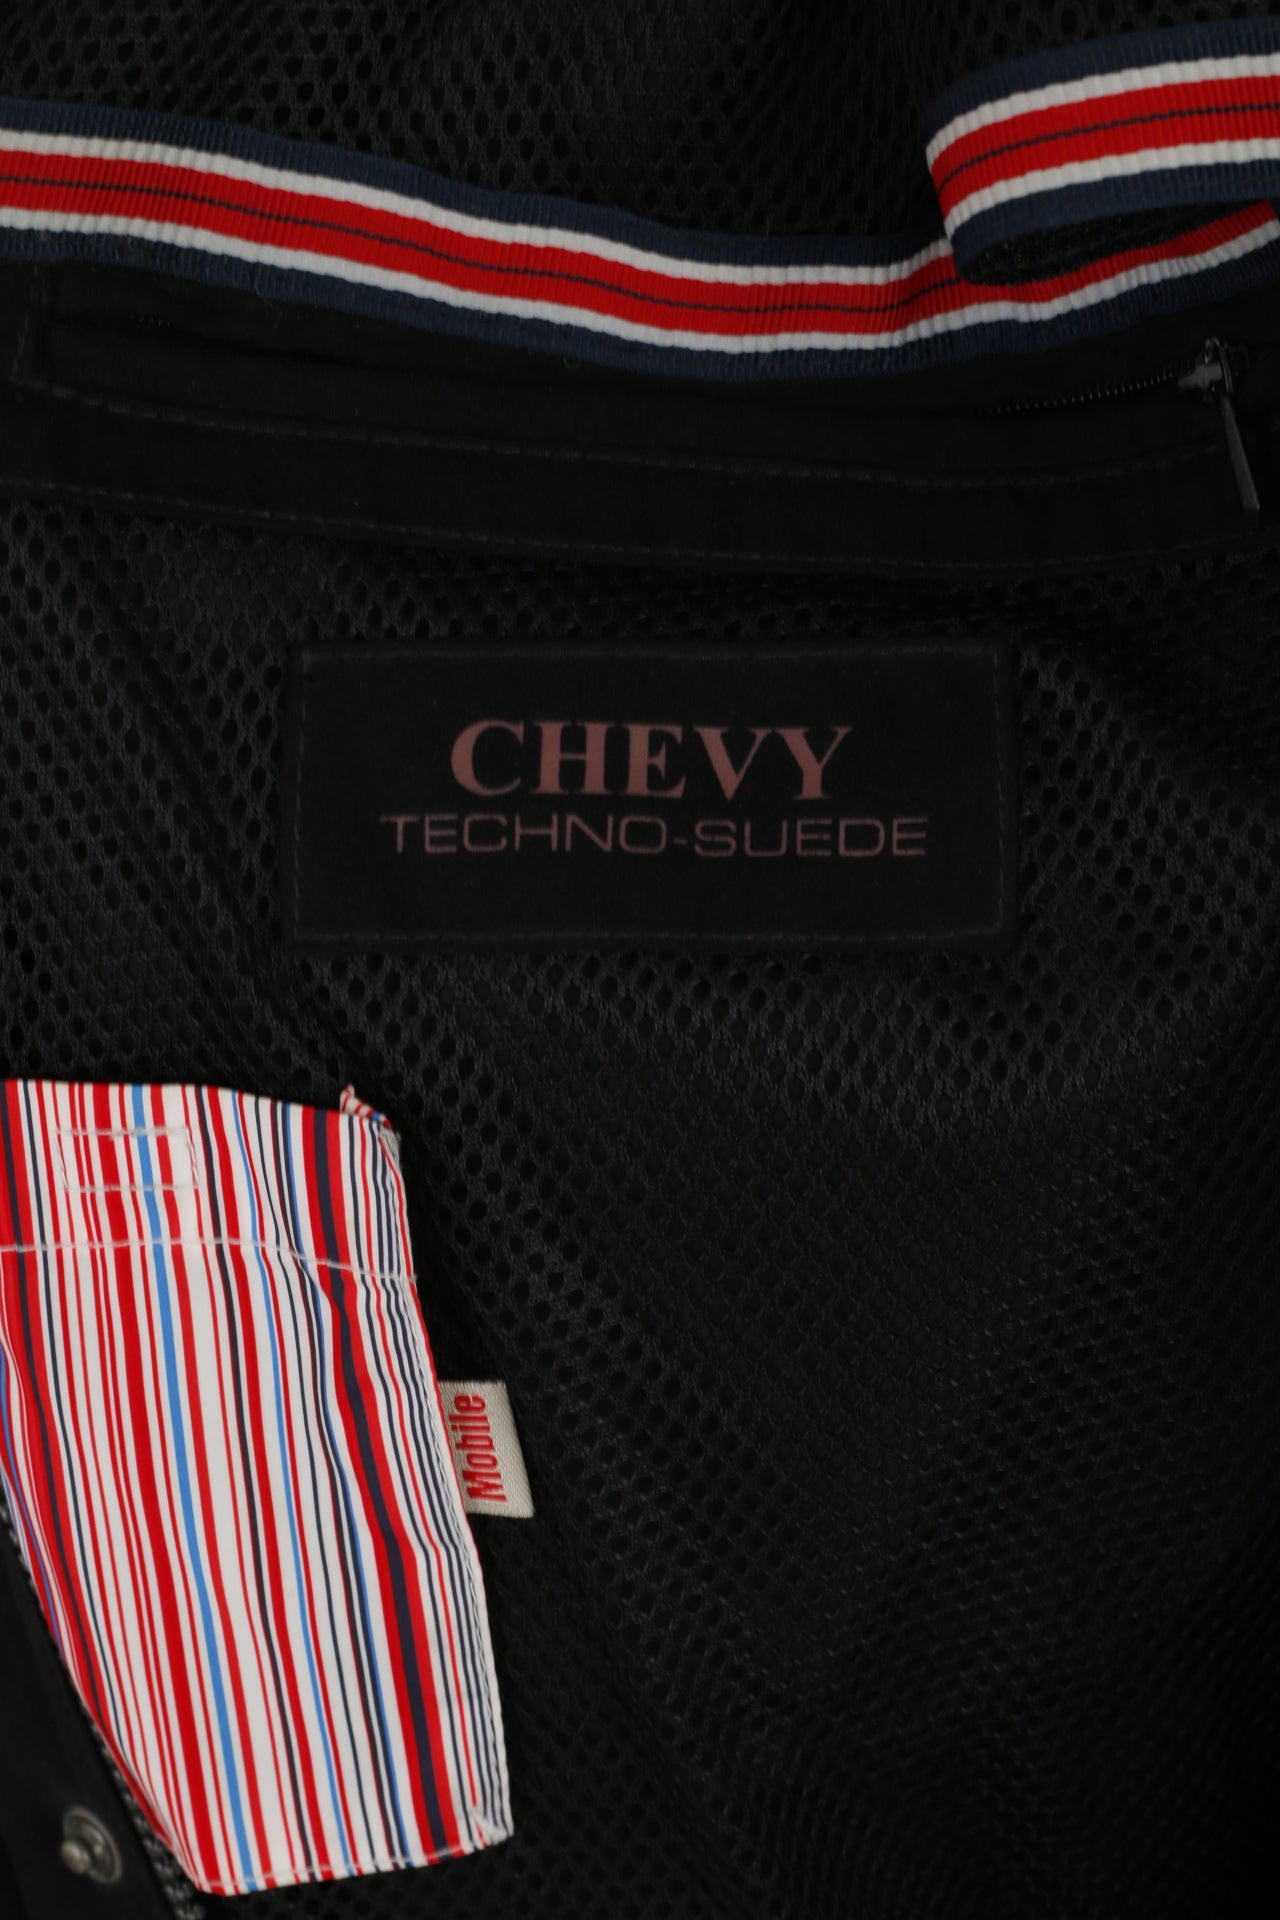 Chevy USA Hommes 56 XL Veste Noir Techno Daim Detroit Racing Zip Up Top